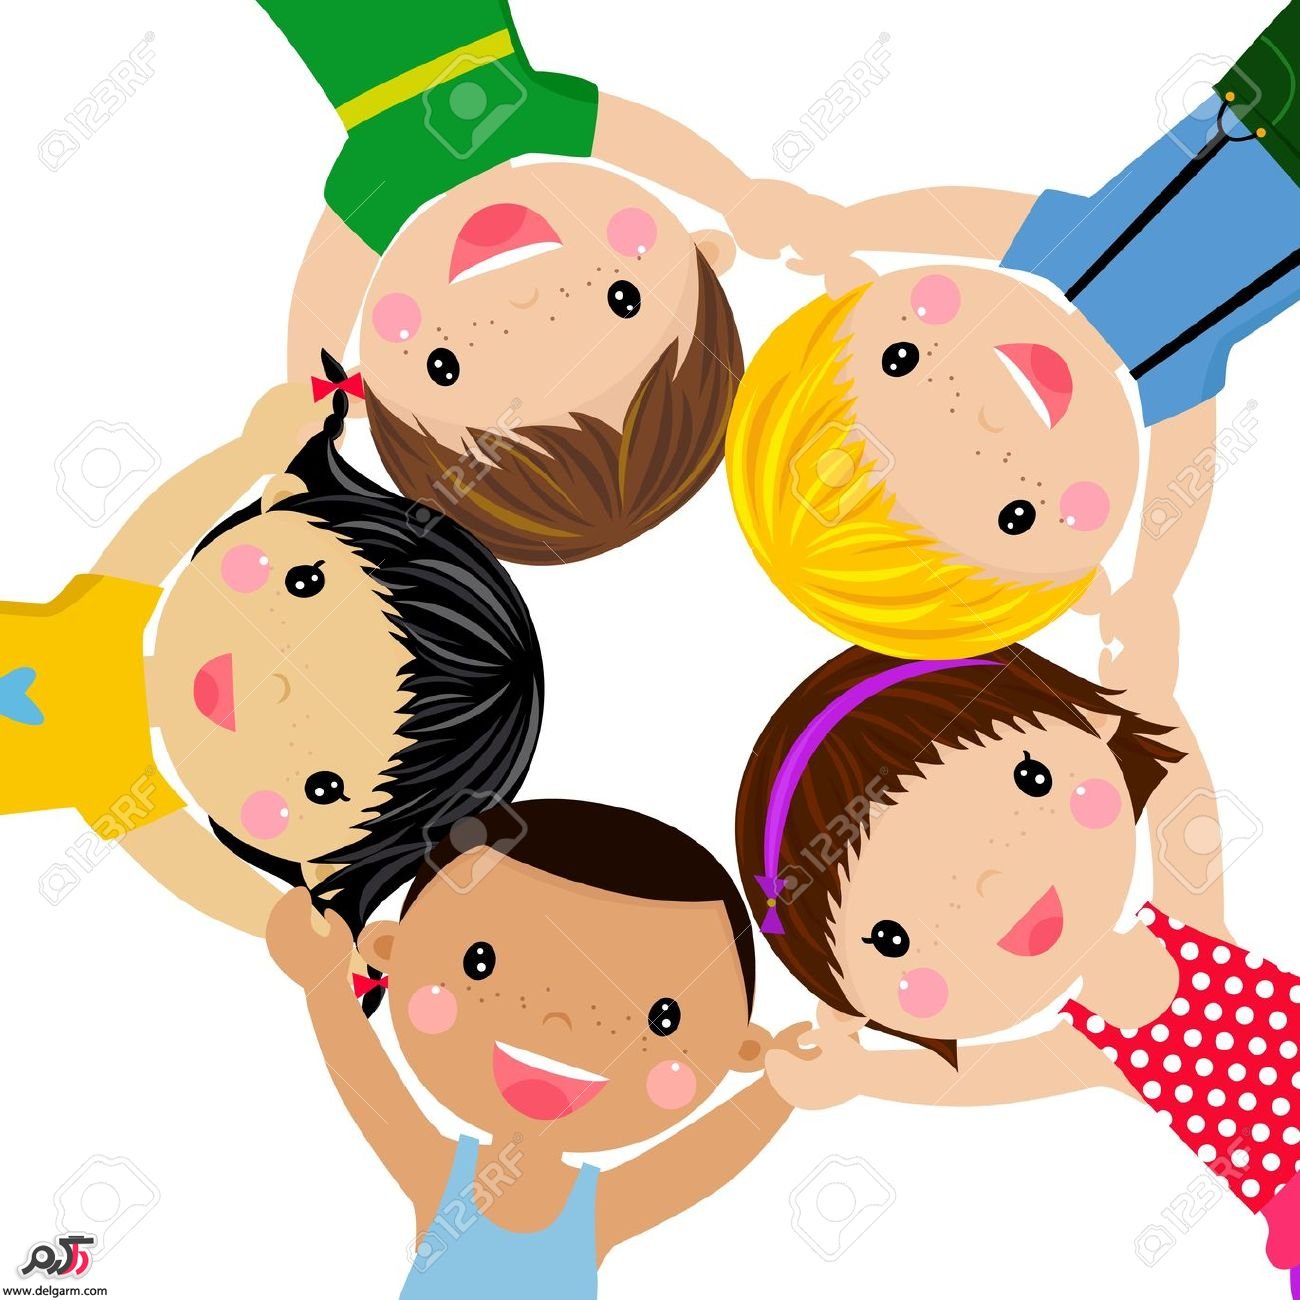 آشنایی با روز جهانی کودک روز کودک روزی است که برای یادبود و افتخار کودکان شناخته شده‌است. کشورها و سازمان‌های بین‌المللی مختلف، روزهای متفاوتی را به‌عنوان روز کودک اعلام کرده‌اند و آن را جشن می‌گیرند.سازمان ملل متحد، ۲۰ نوامبر (۲۹ آبان) را روز جهانی کودک اعلام کرده‌است. 